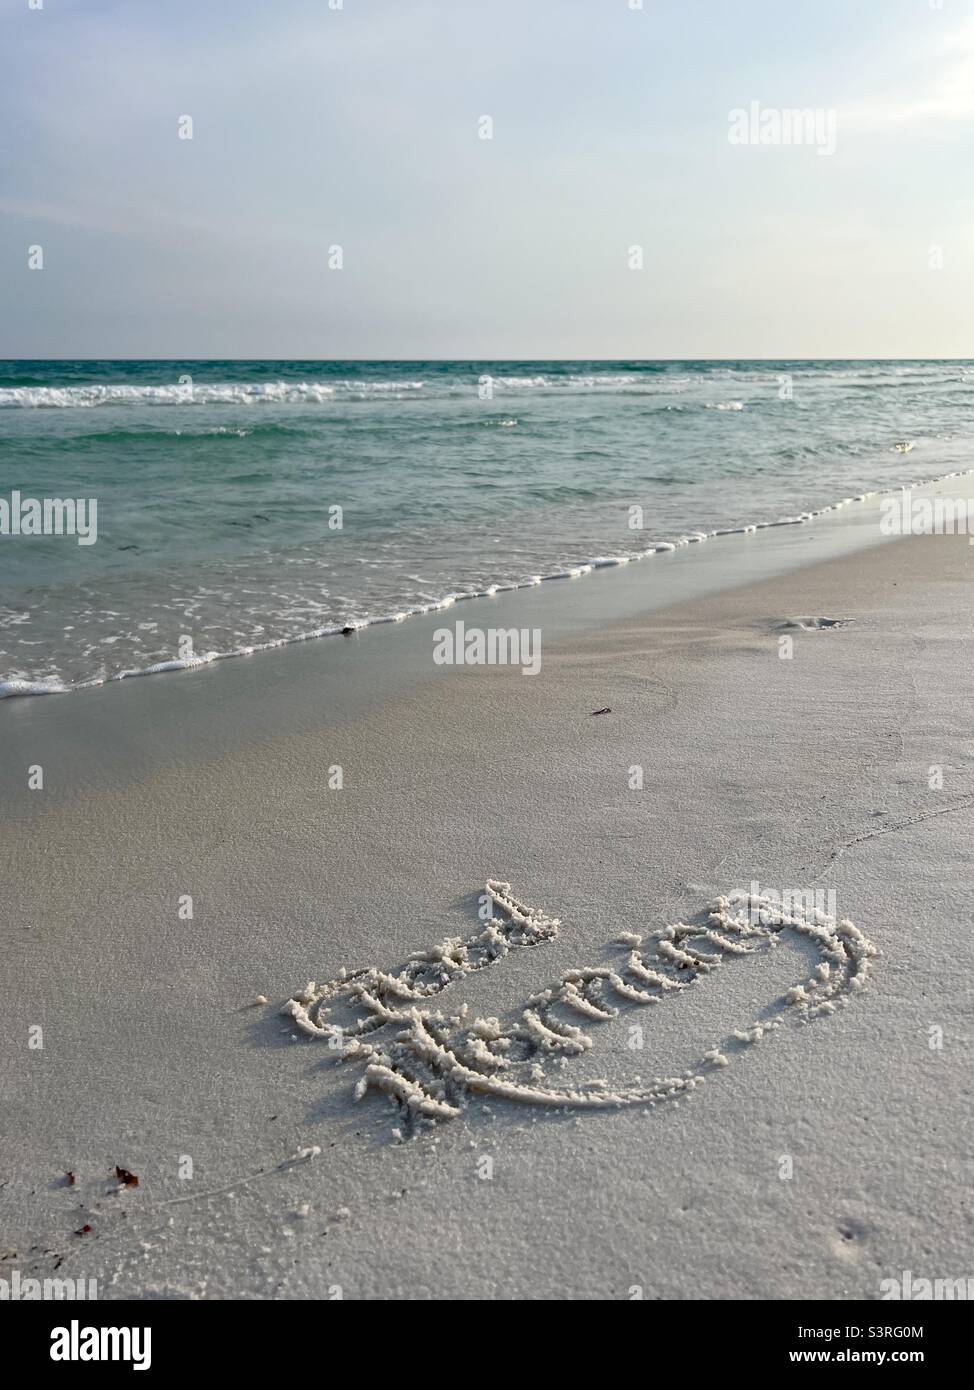 Good morning written on beach sand Stock Photo